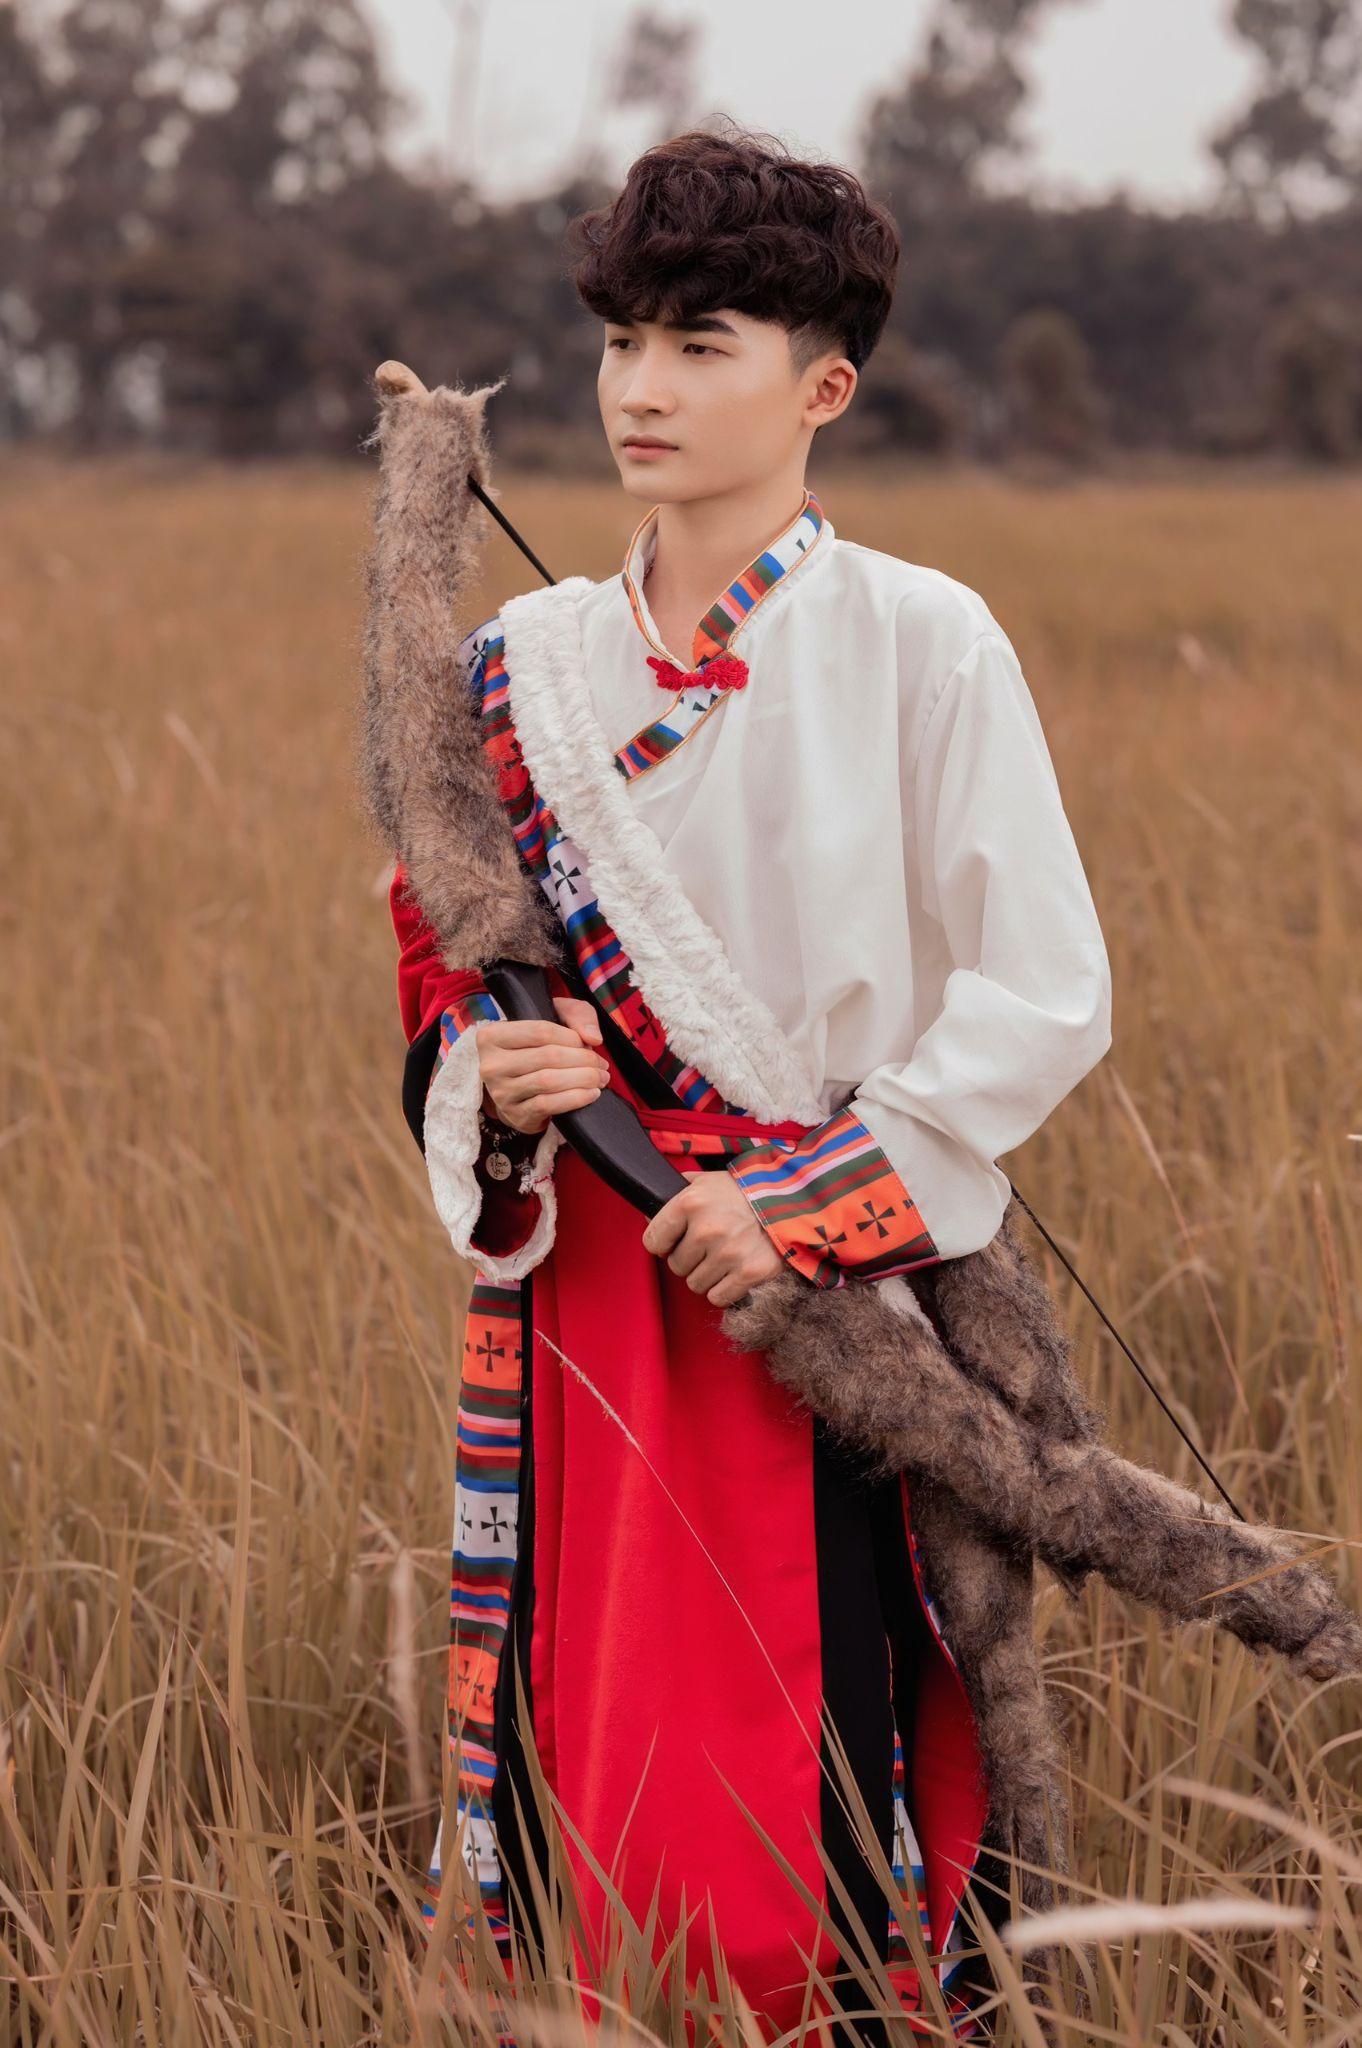 Nguyễn Quang Nam: Chàng trai trẻ với niềm đam mê cosplay thành nữ, thả hồn trong những bức ảnh cực chất - Ảnh 9.